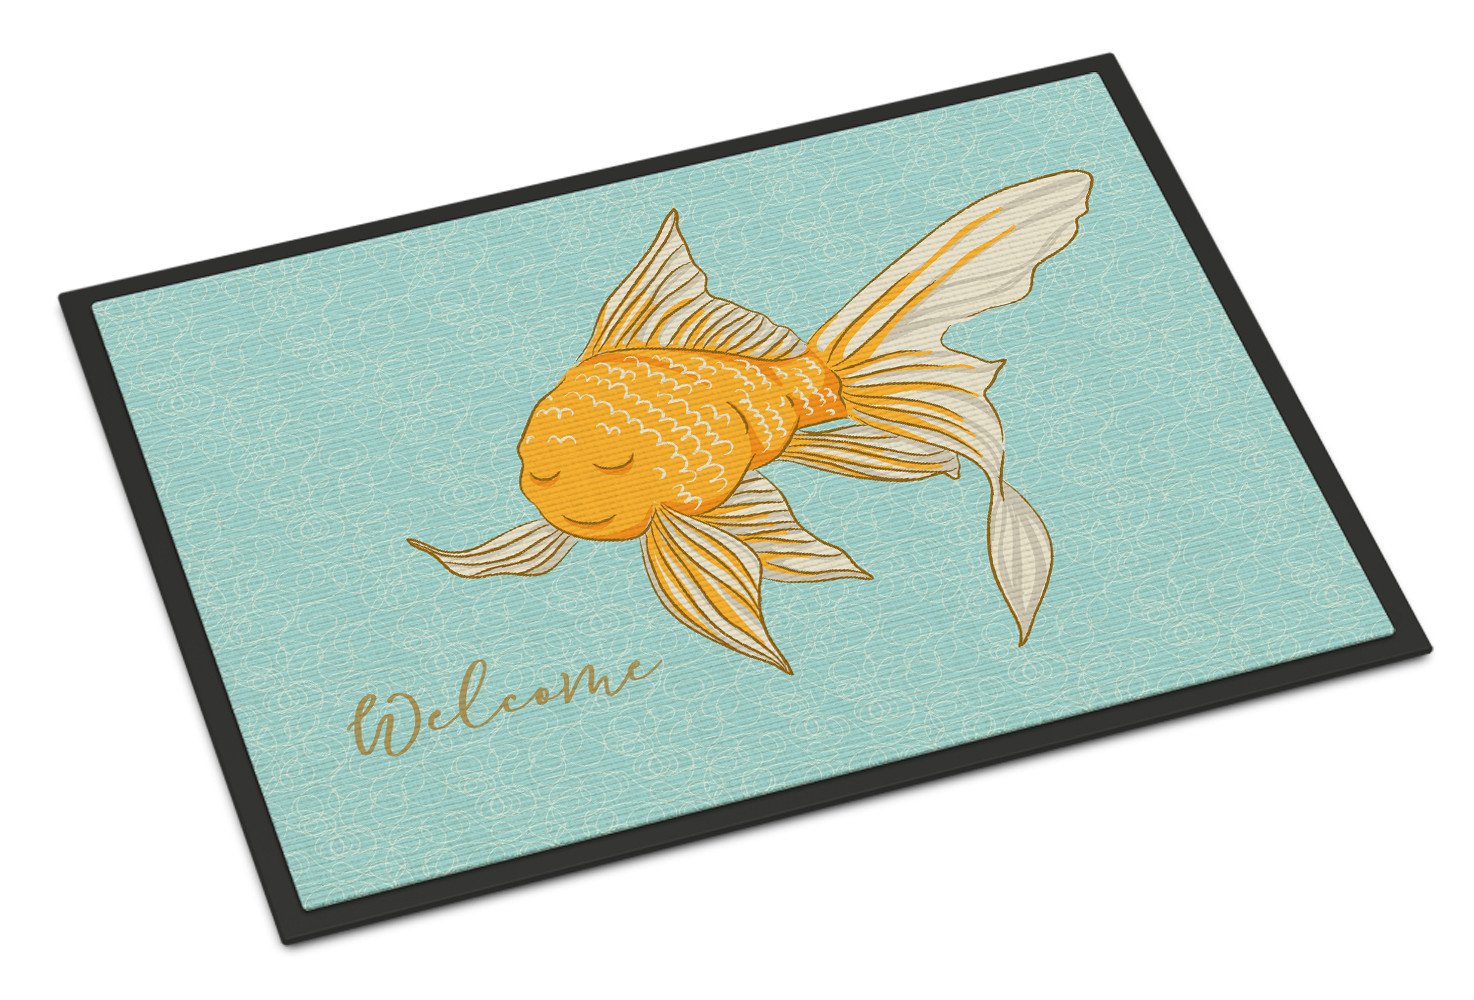 Gold Fish Welcome Indoor or Outdoor Mat 24x36 BB8551JMAT by Caroline's Treasures